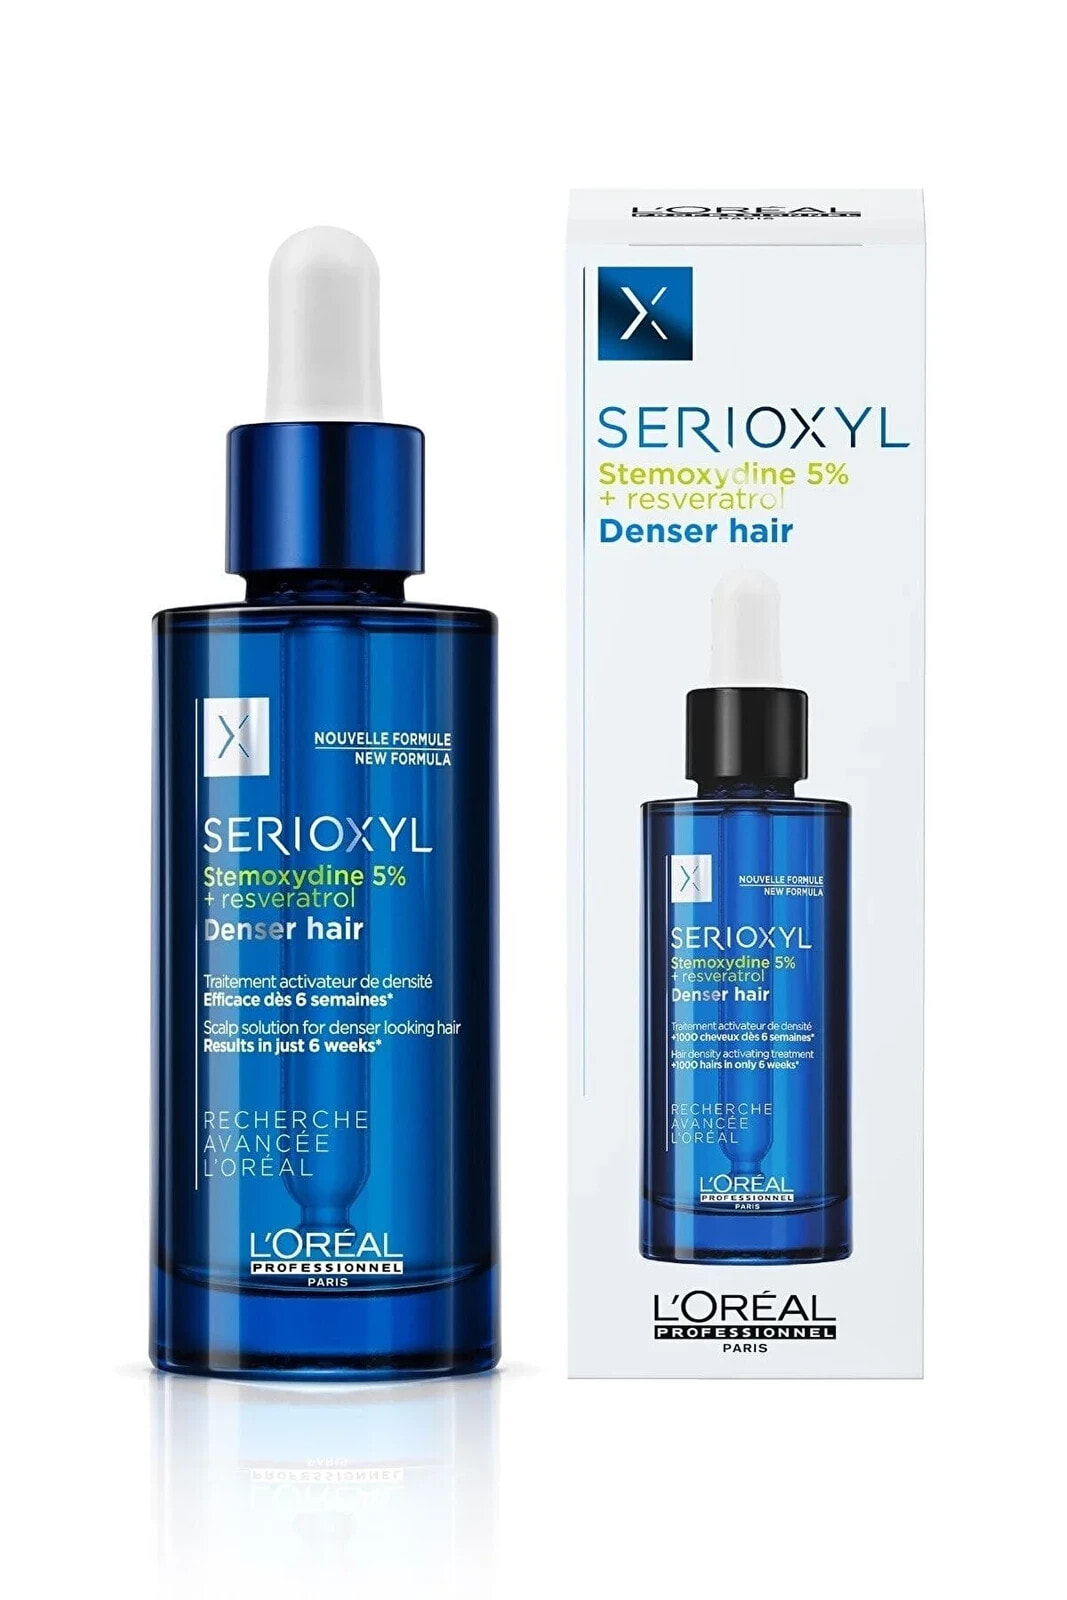 Orıjınal Yeni Ürün Loreal Serioxyl Denser Hair Yoğunluk Arttırıcı Serum Stemoxydine Resveratrol 90ml